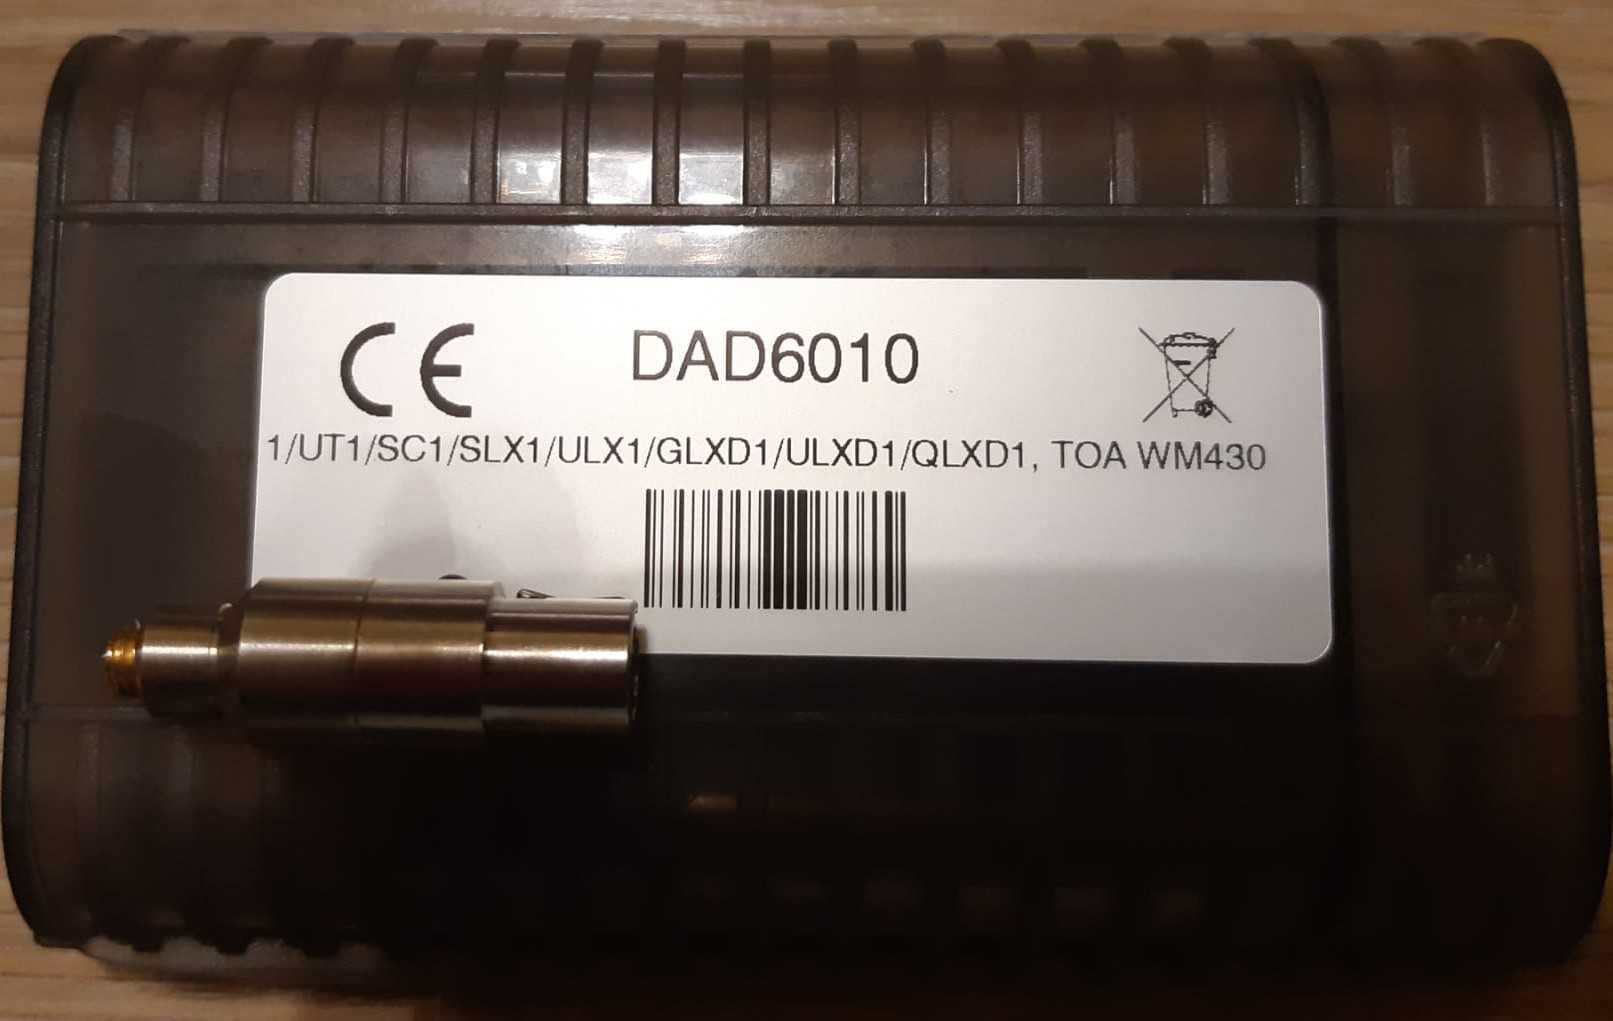 Adaptor DPA - DAD6010, DAD6034, El-adapter, LE-adapter